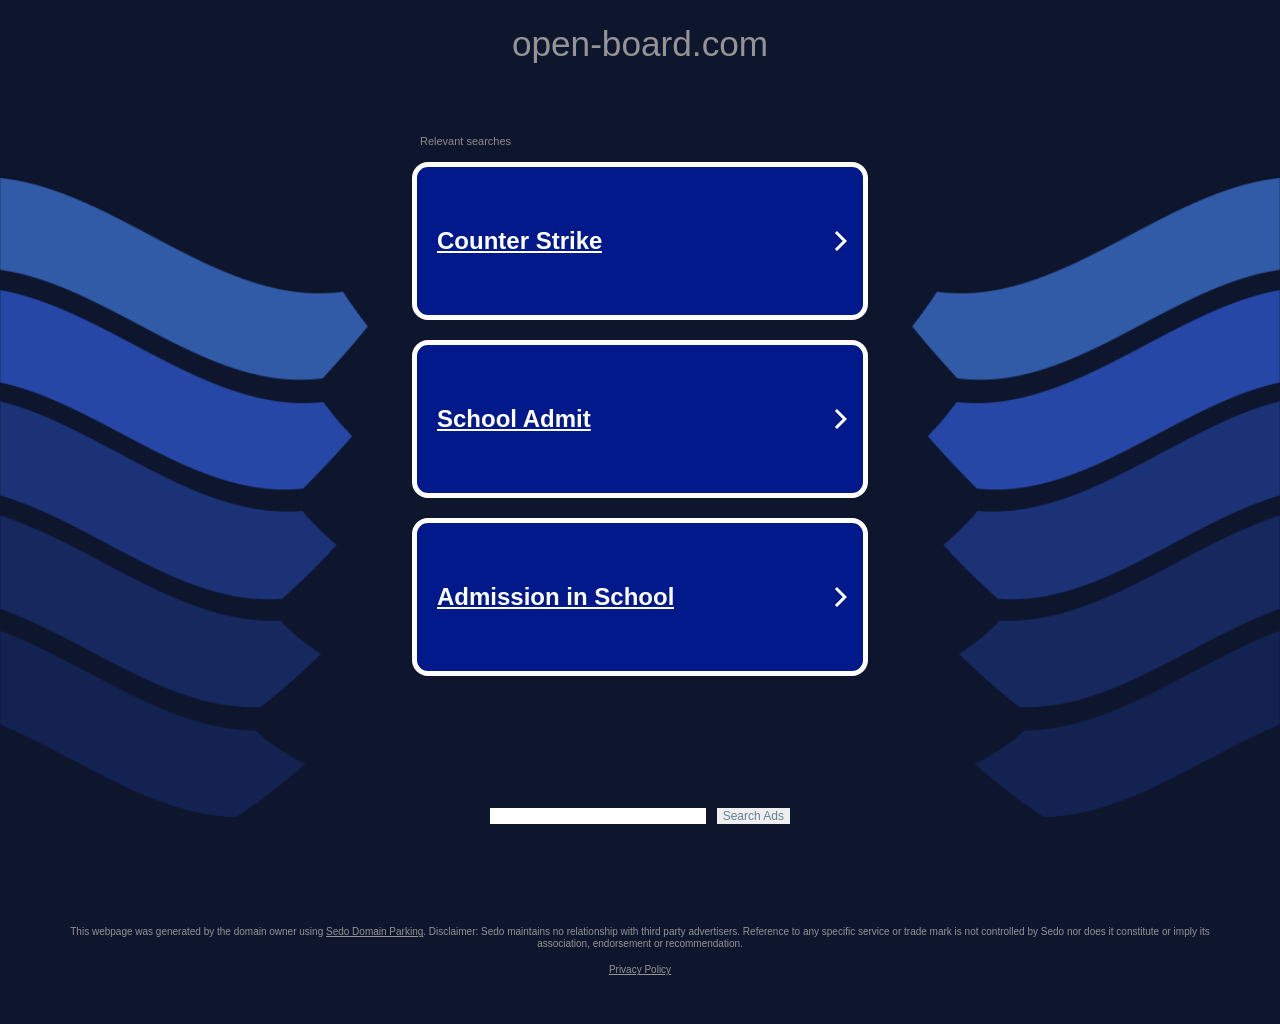 open-board.com